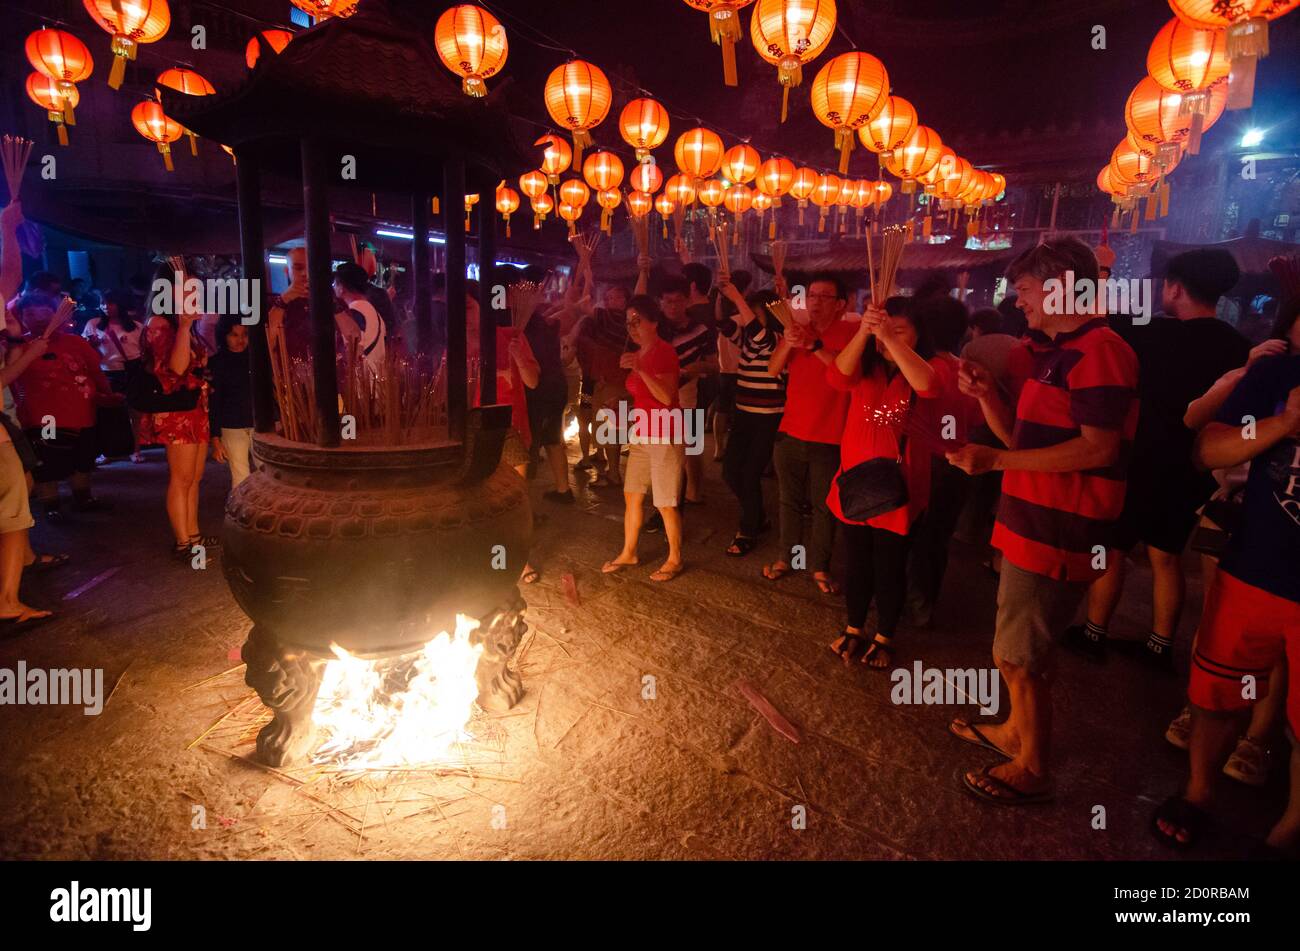 Georgetown, Penang/Malaysia - Jan 24 2020: Der Weihrauchtopf ist Feuer, wenn es zu viel Räucherstäbchen gibt. Stockfoto